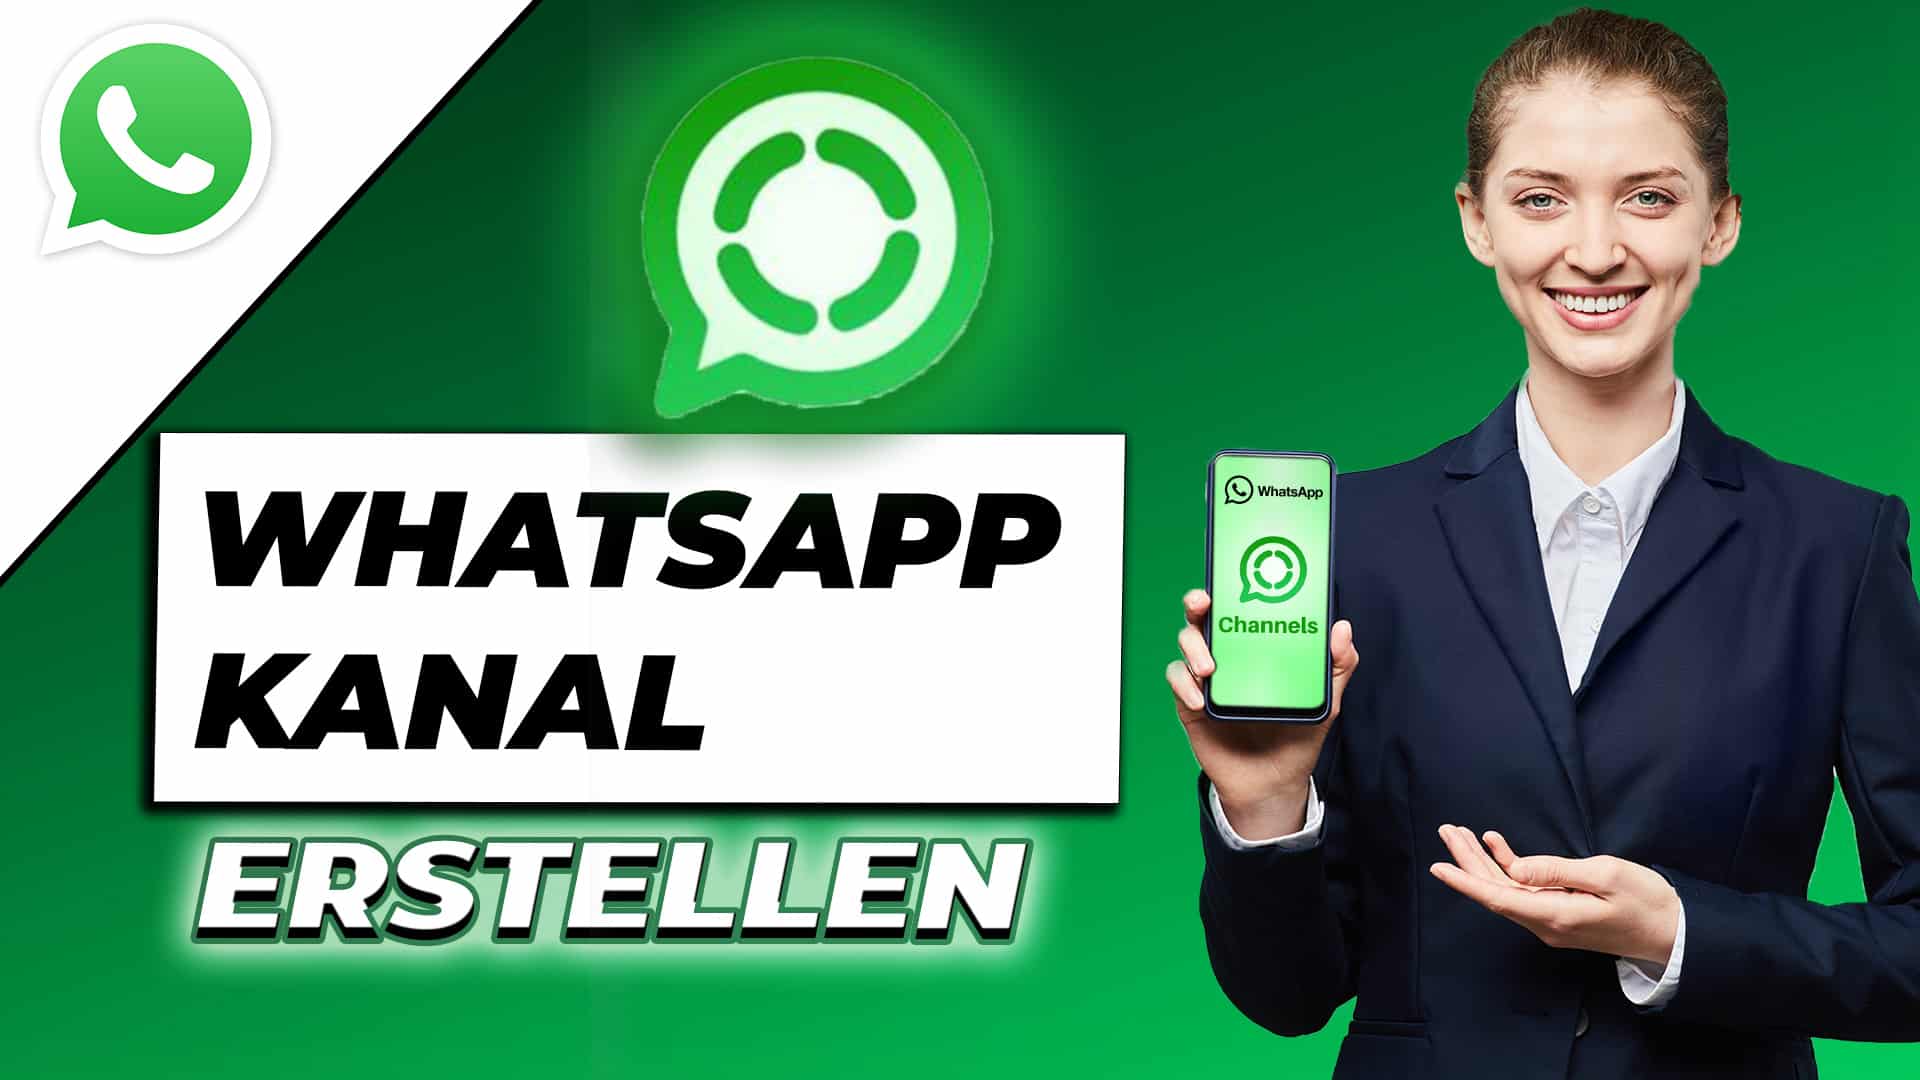 WhatsApp Kanal erstellen – Eigenen WhatsApp Channel anlegen